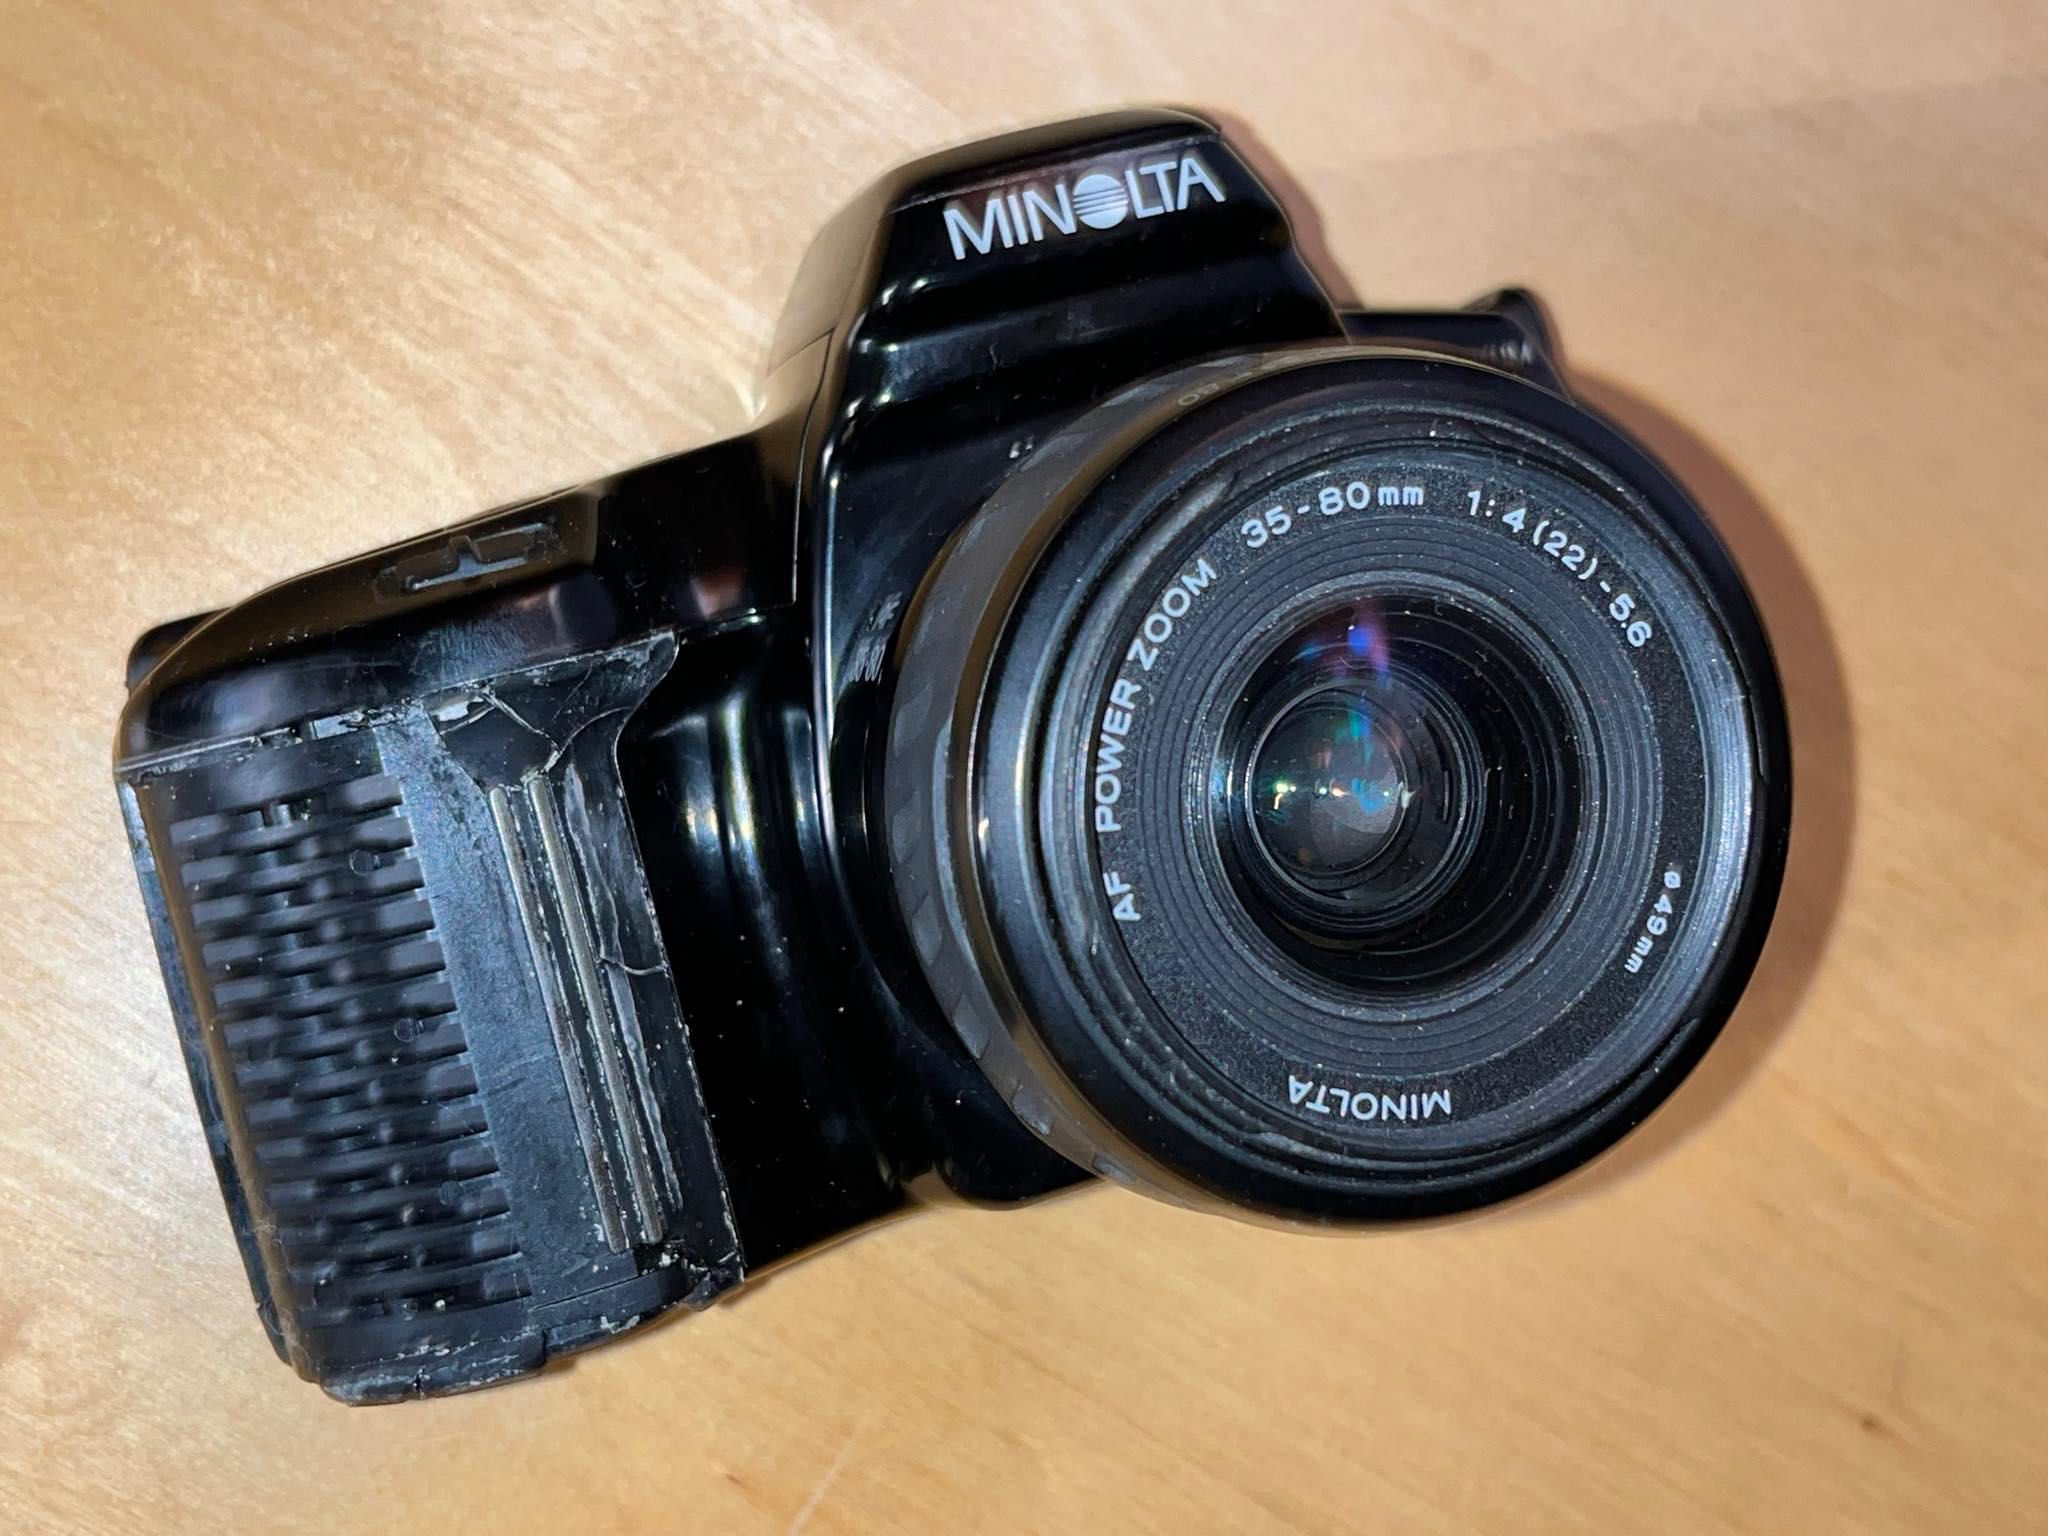 lustrzanka Minolta Maxxum 3xi + obiektyw AF Power Zoom 35-80mm